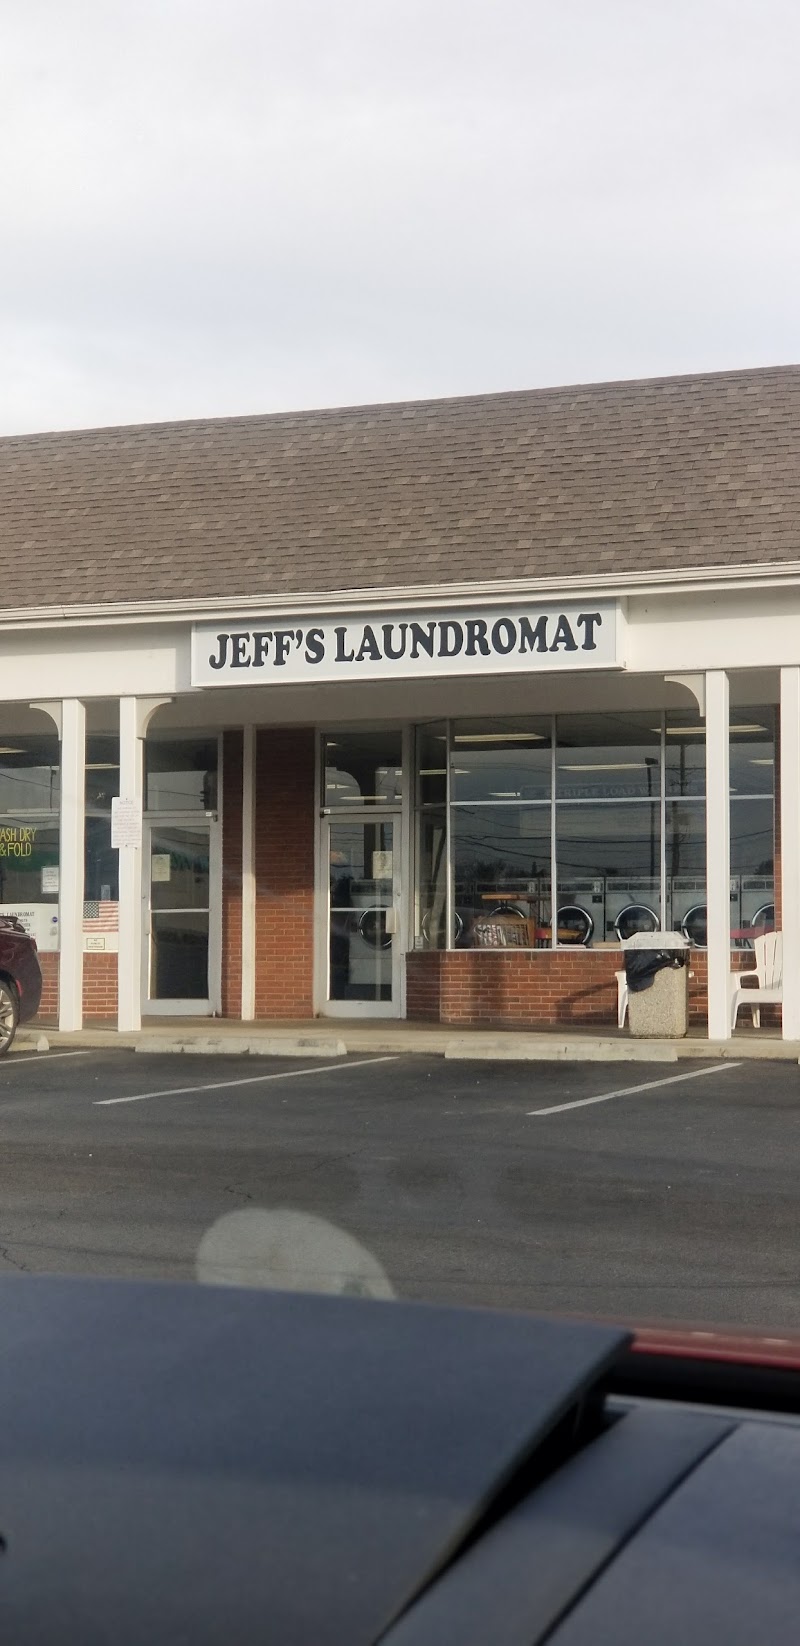 Jeffs Laundromat image 8